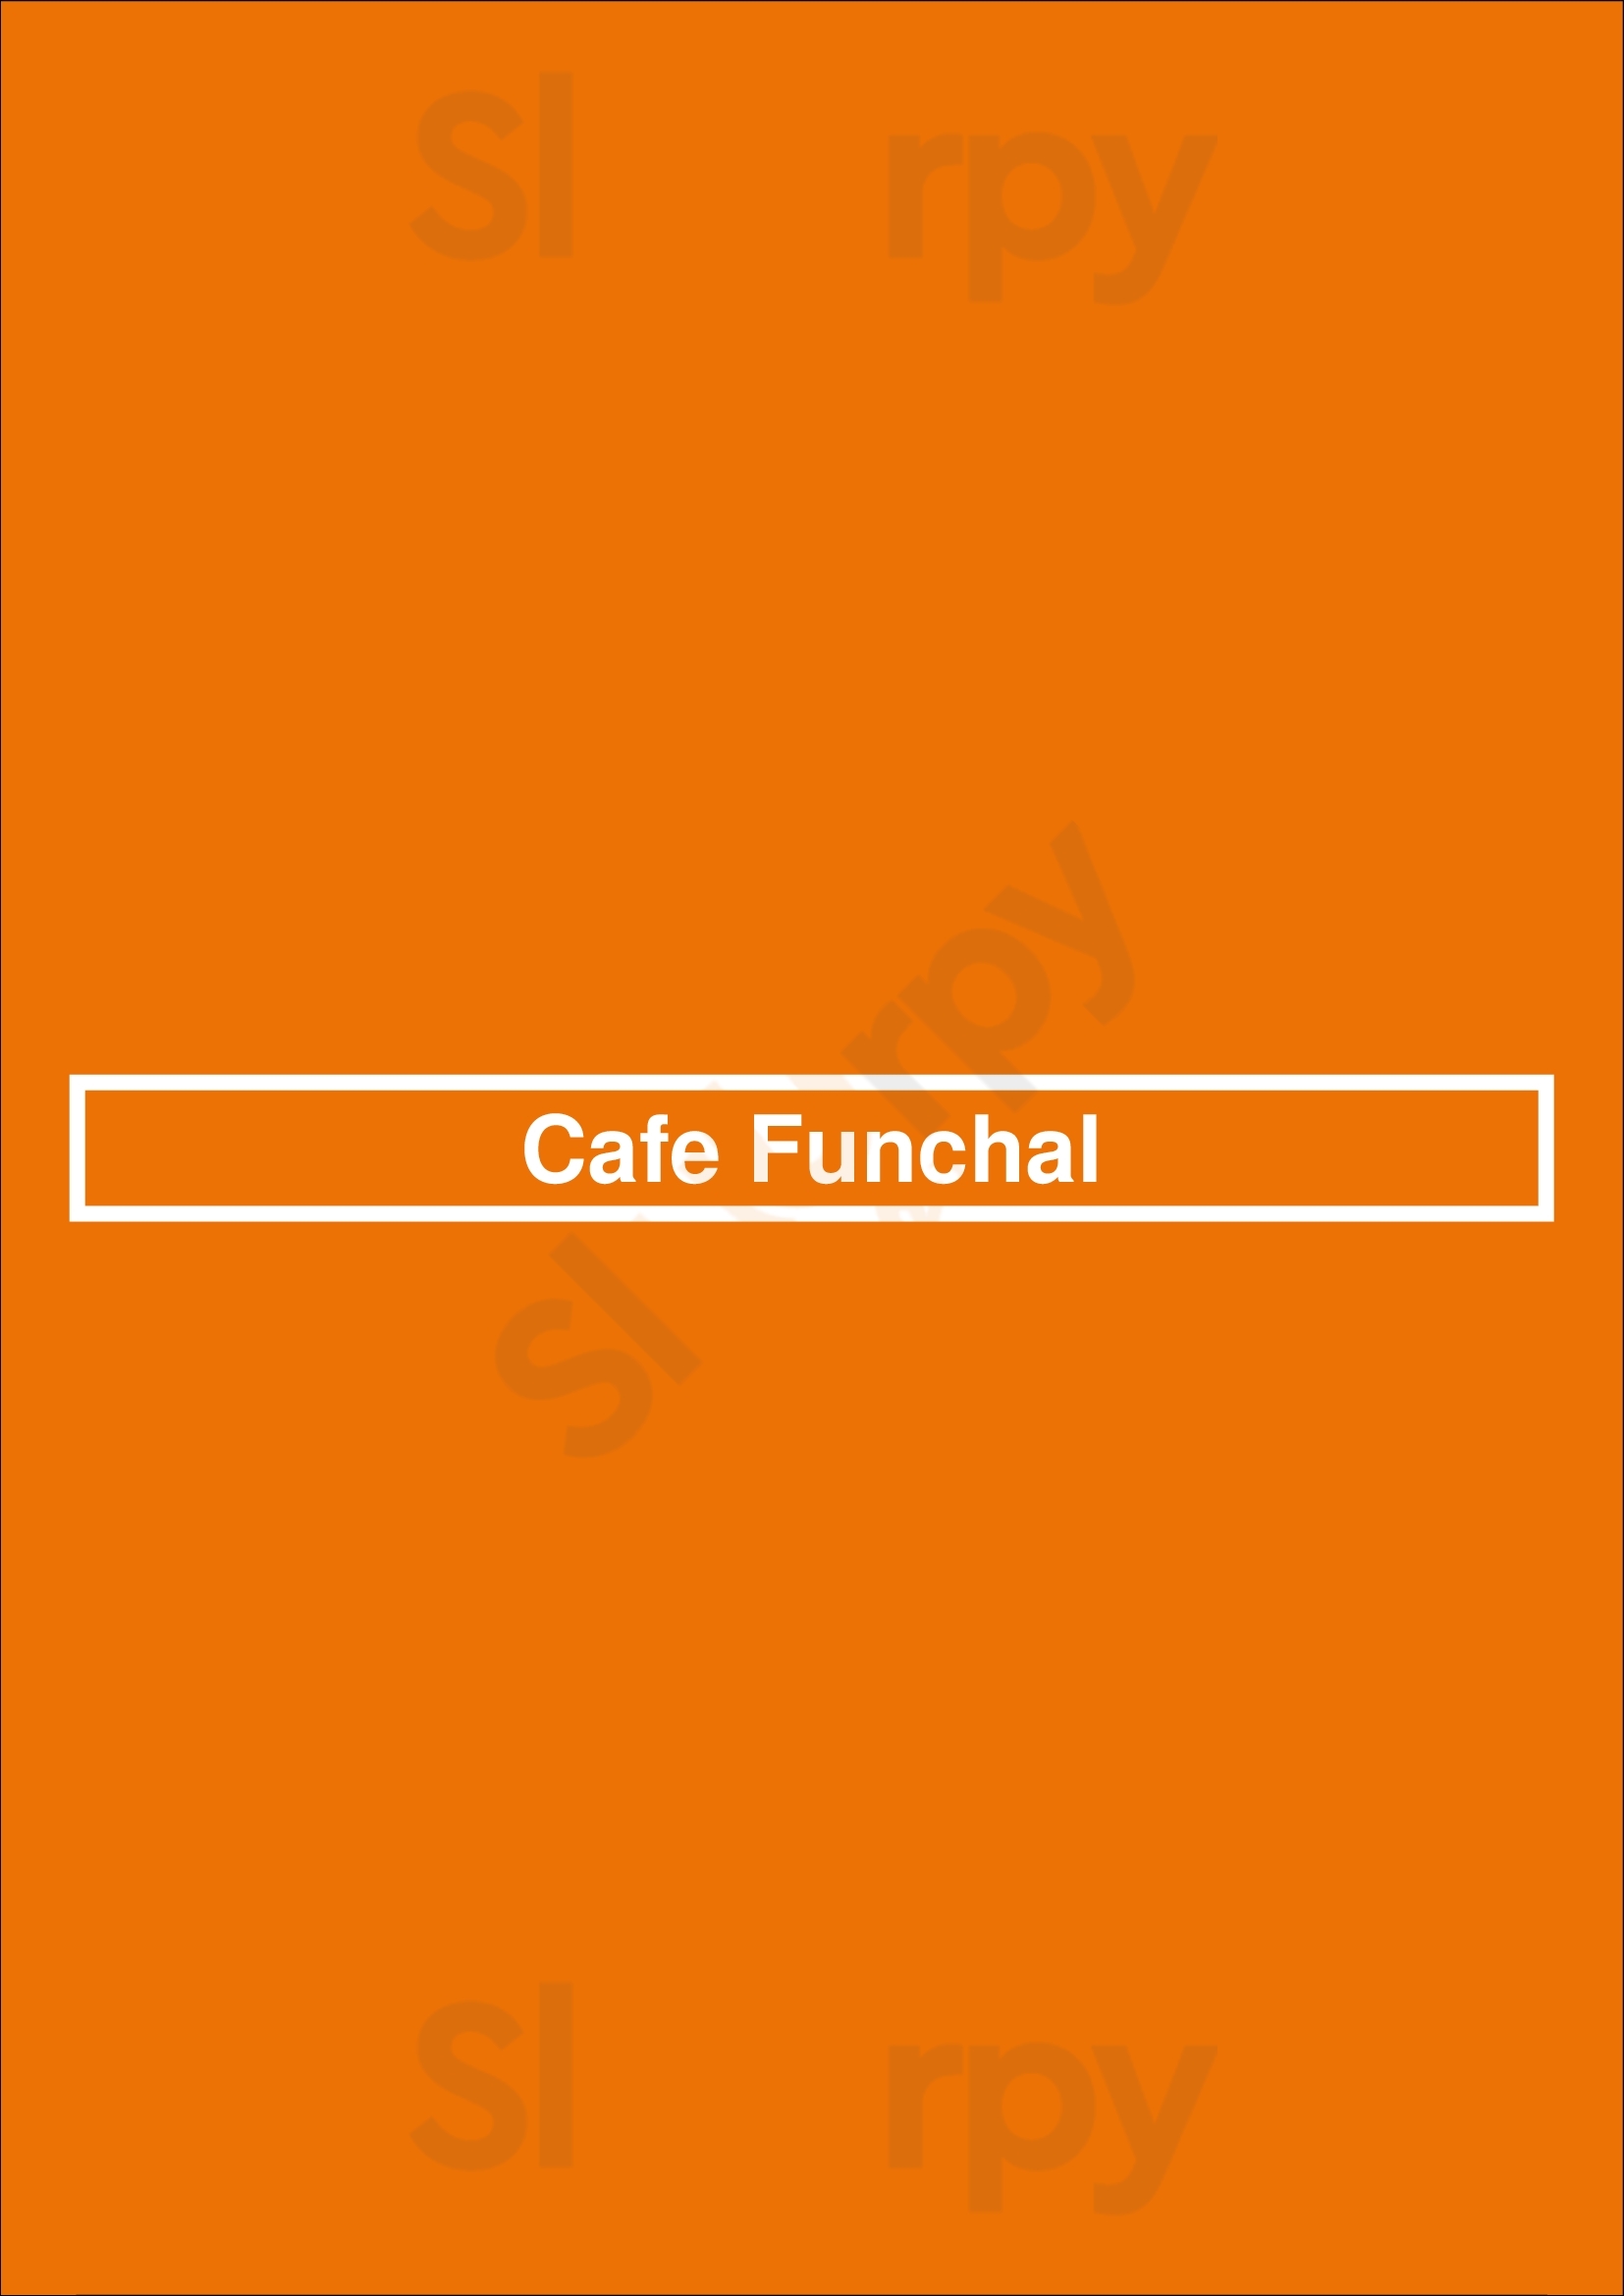 Cafe Funchal Funchal Menu - 1